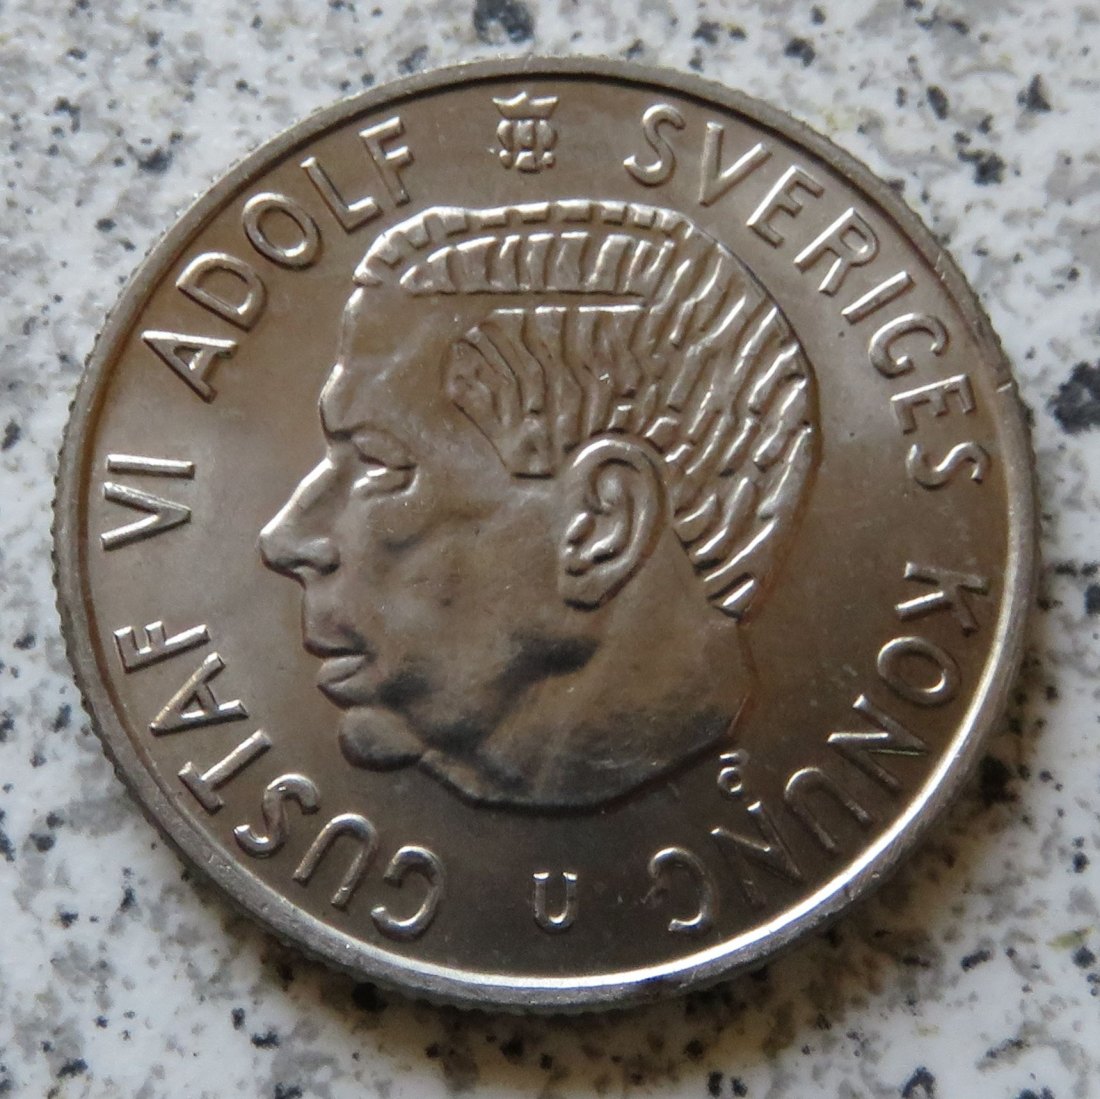  Schweden 2 Kronor 1970   